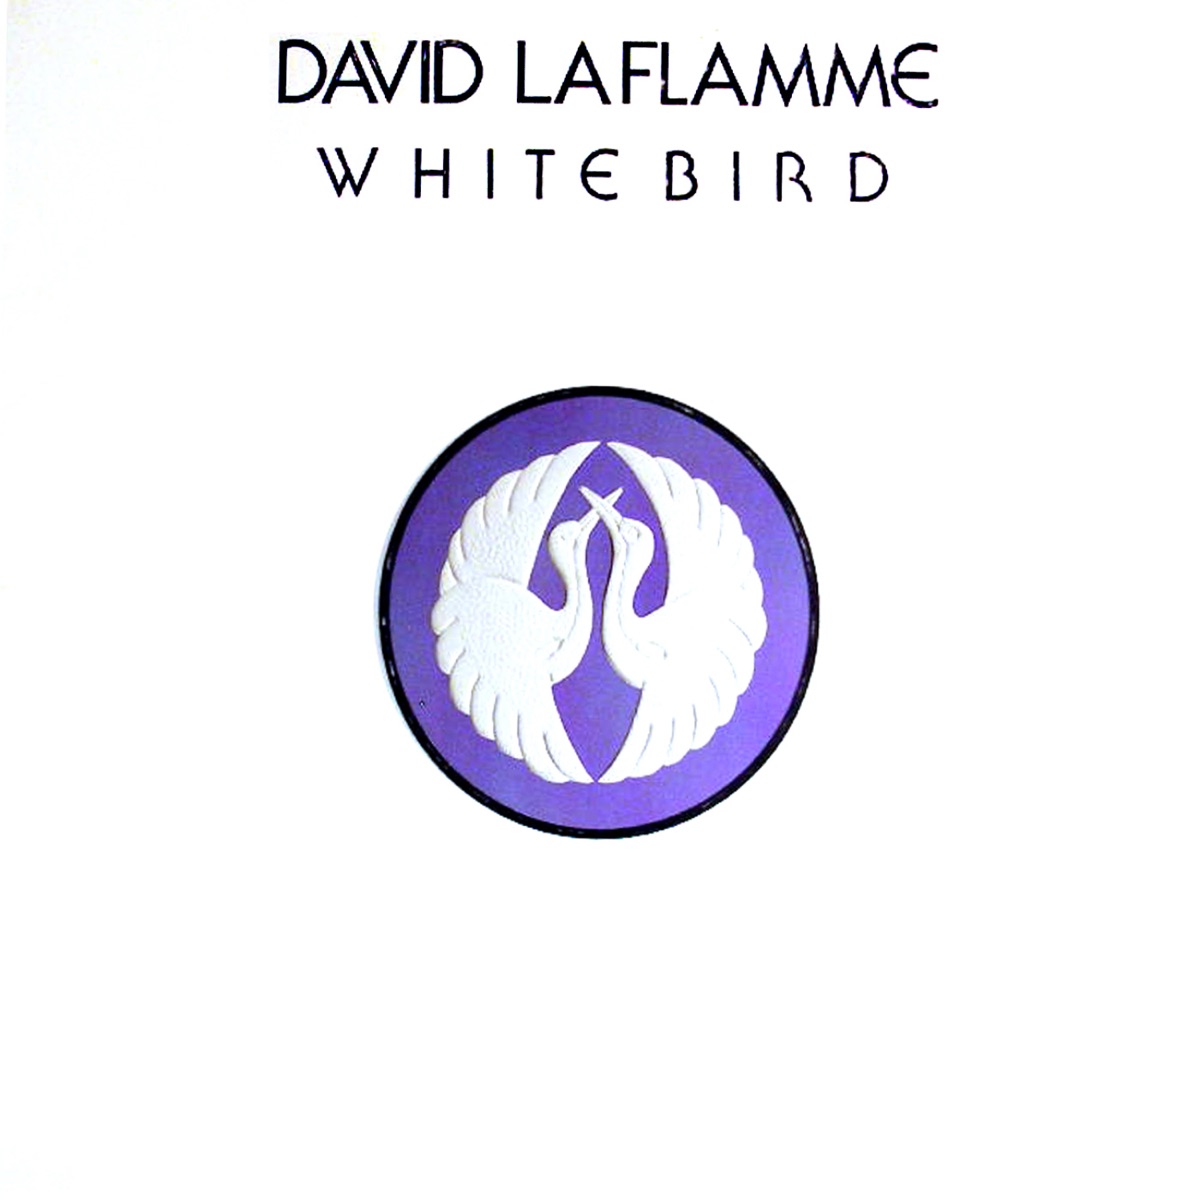 David LaFlamme